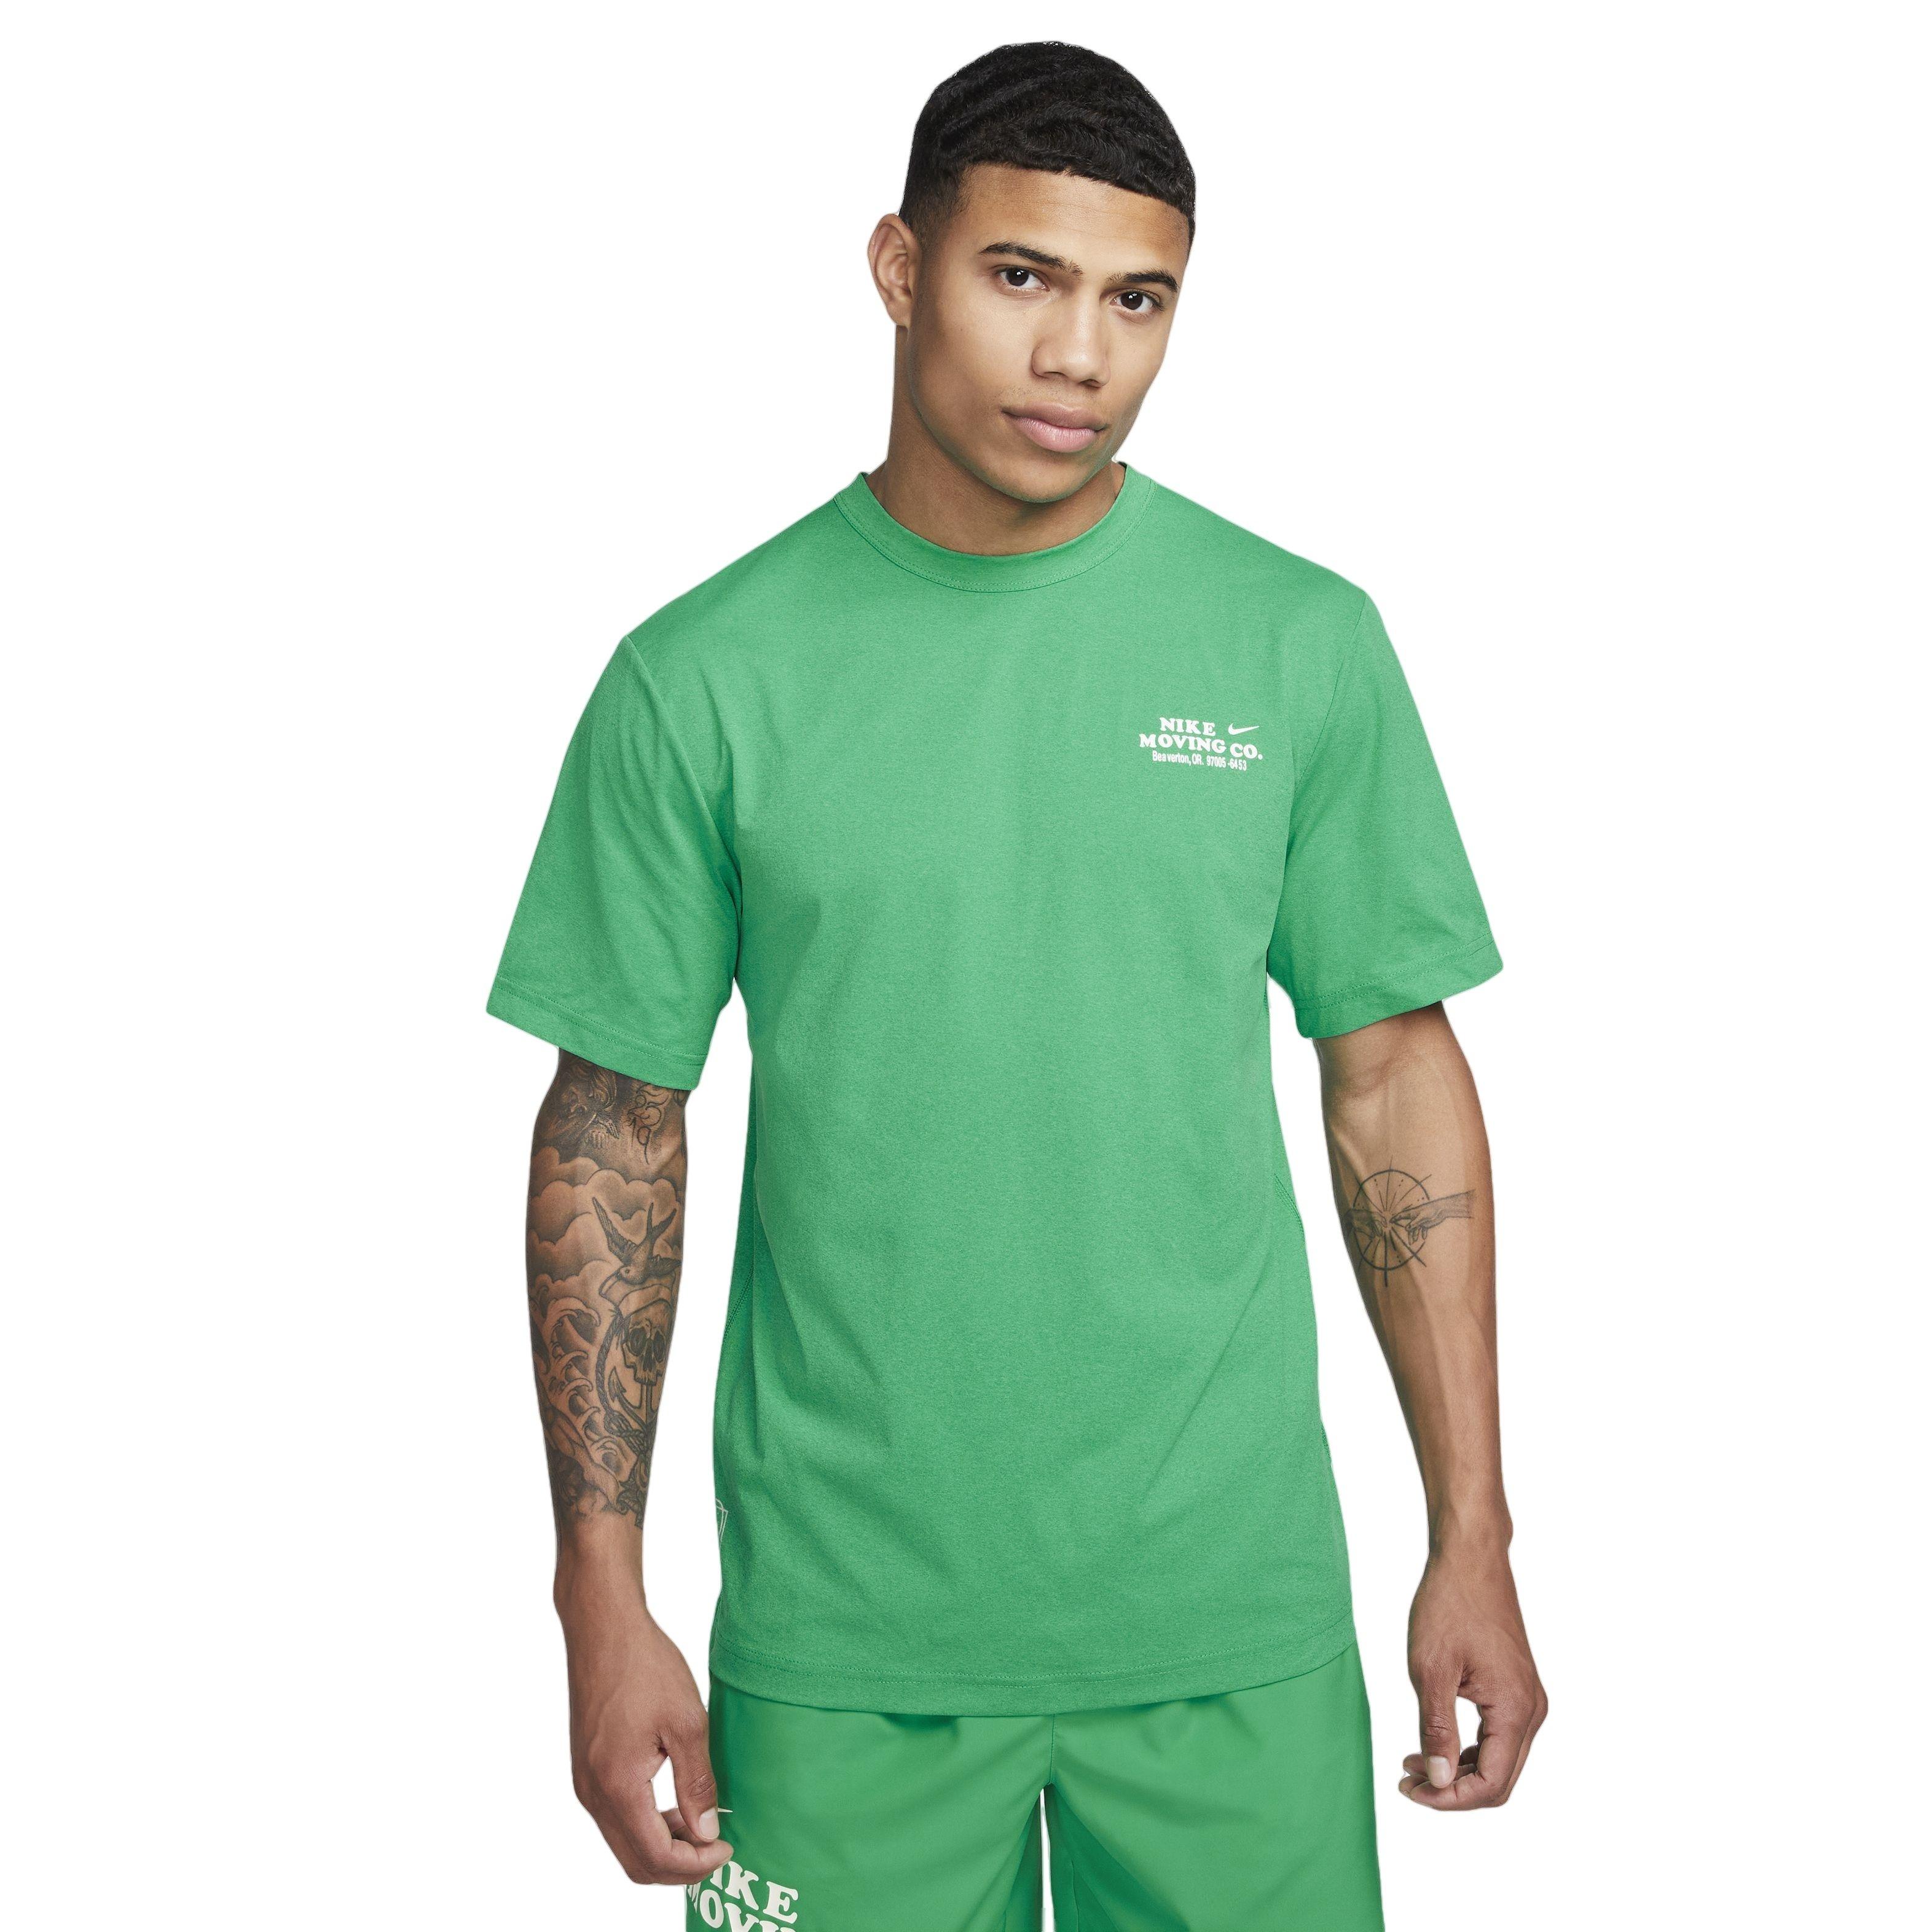 Green Nike Core T-Shirt - JD Sports Global